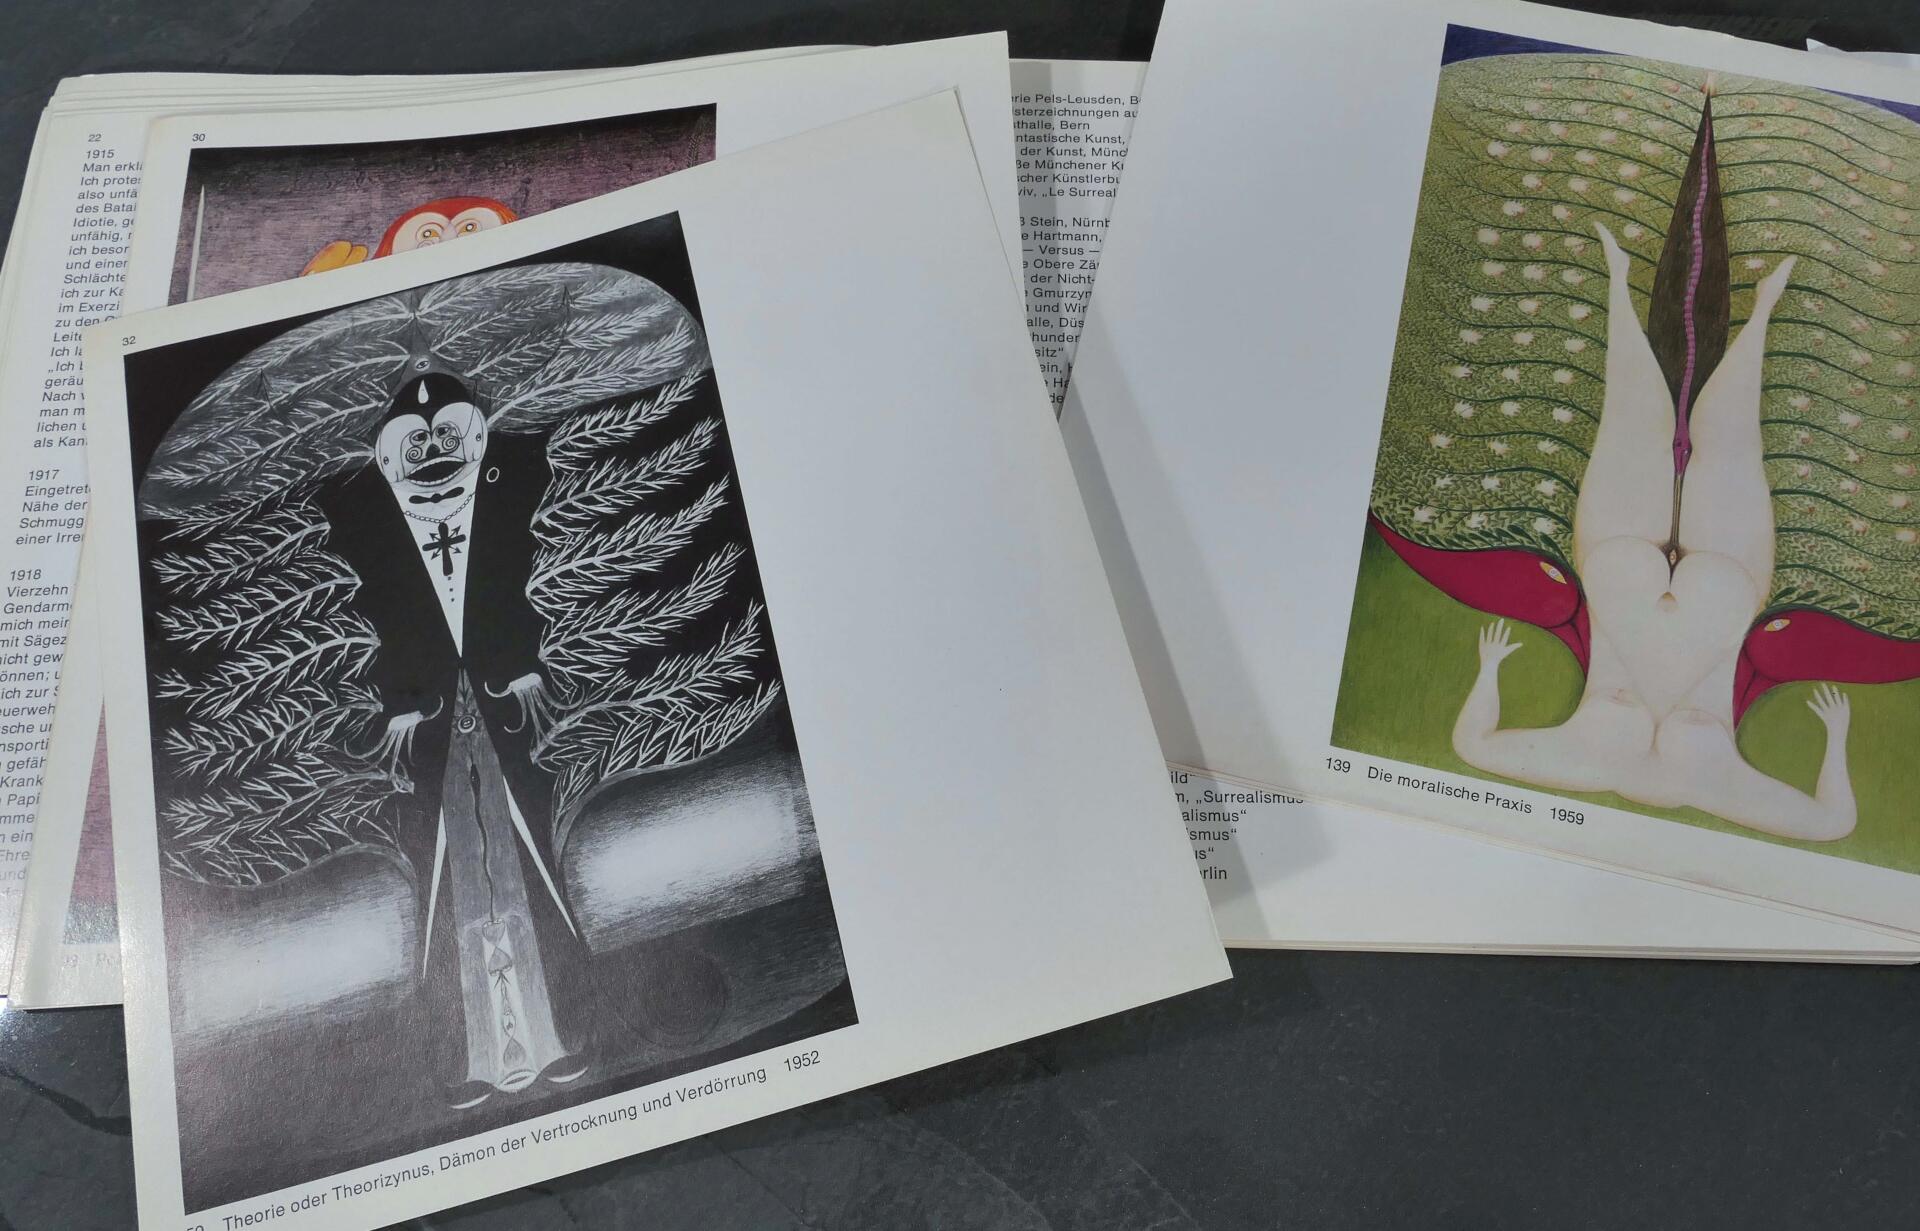 3 tlg. Konvolut "Friedrich Schröder-Sonnenstern", bestehend aus Katalog von 1973 und Preisliste 199 - Image 5 of 6